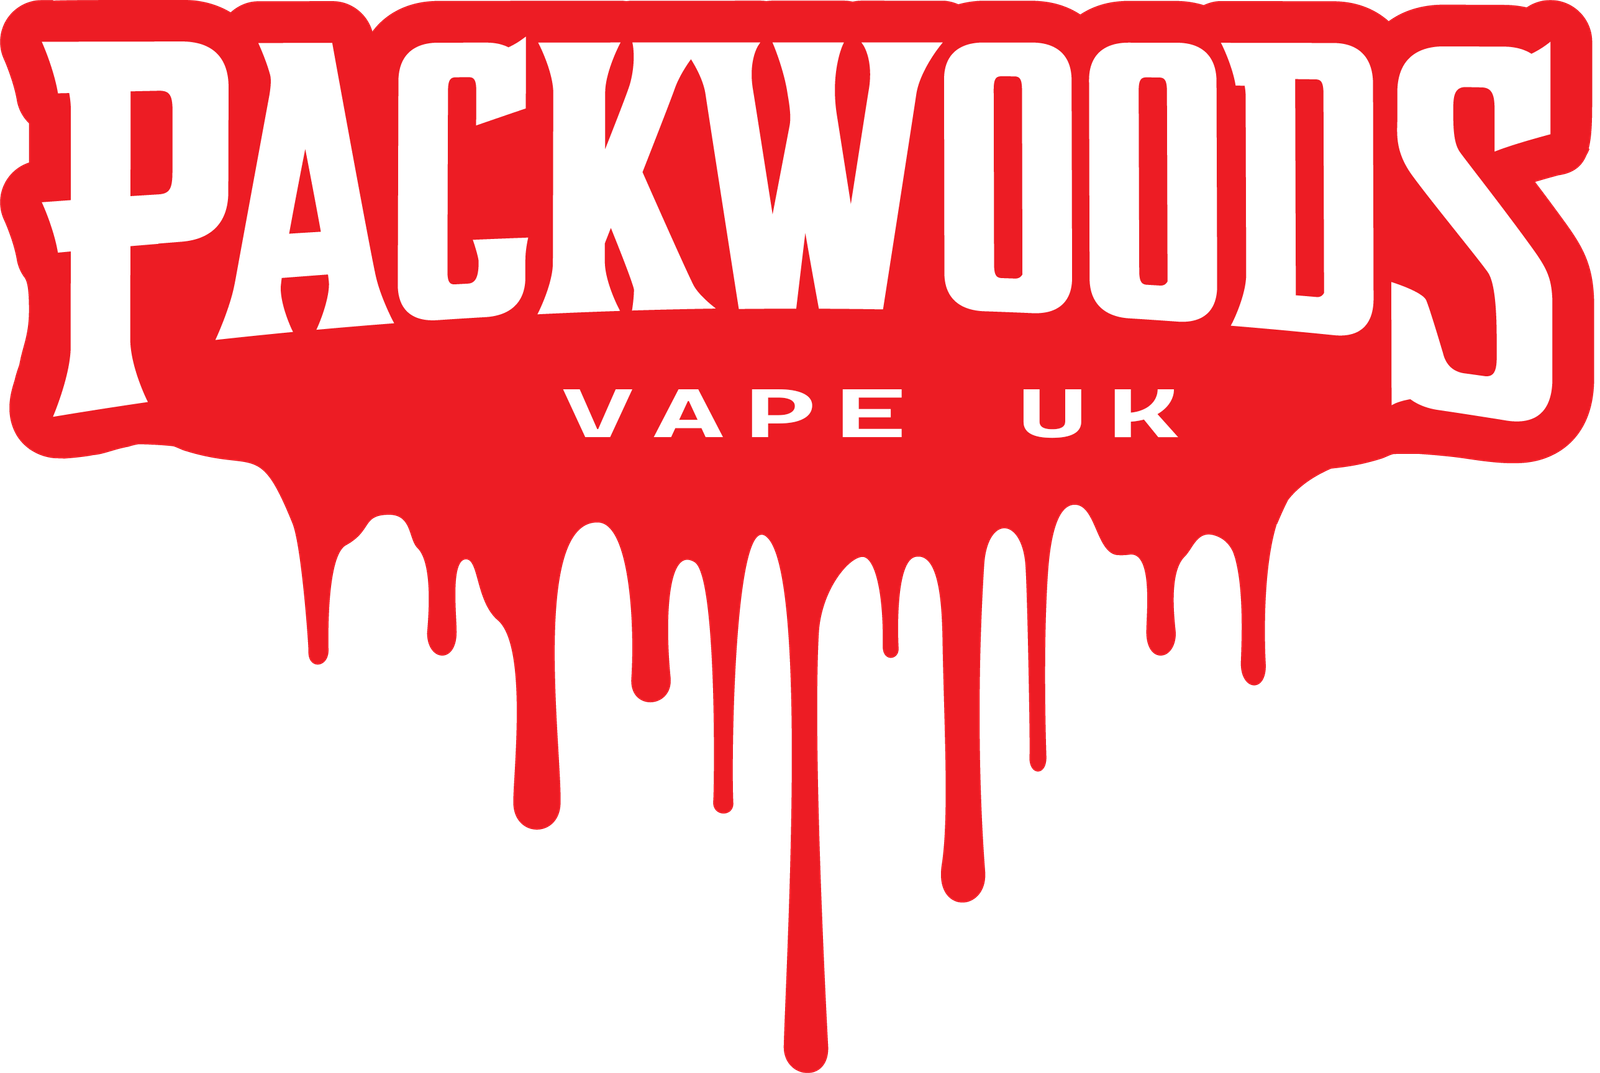 Packwoods Vape UK